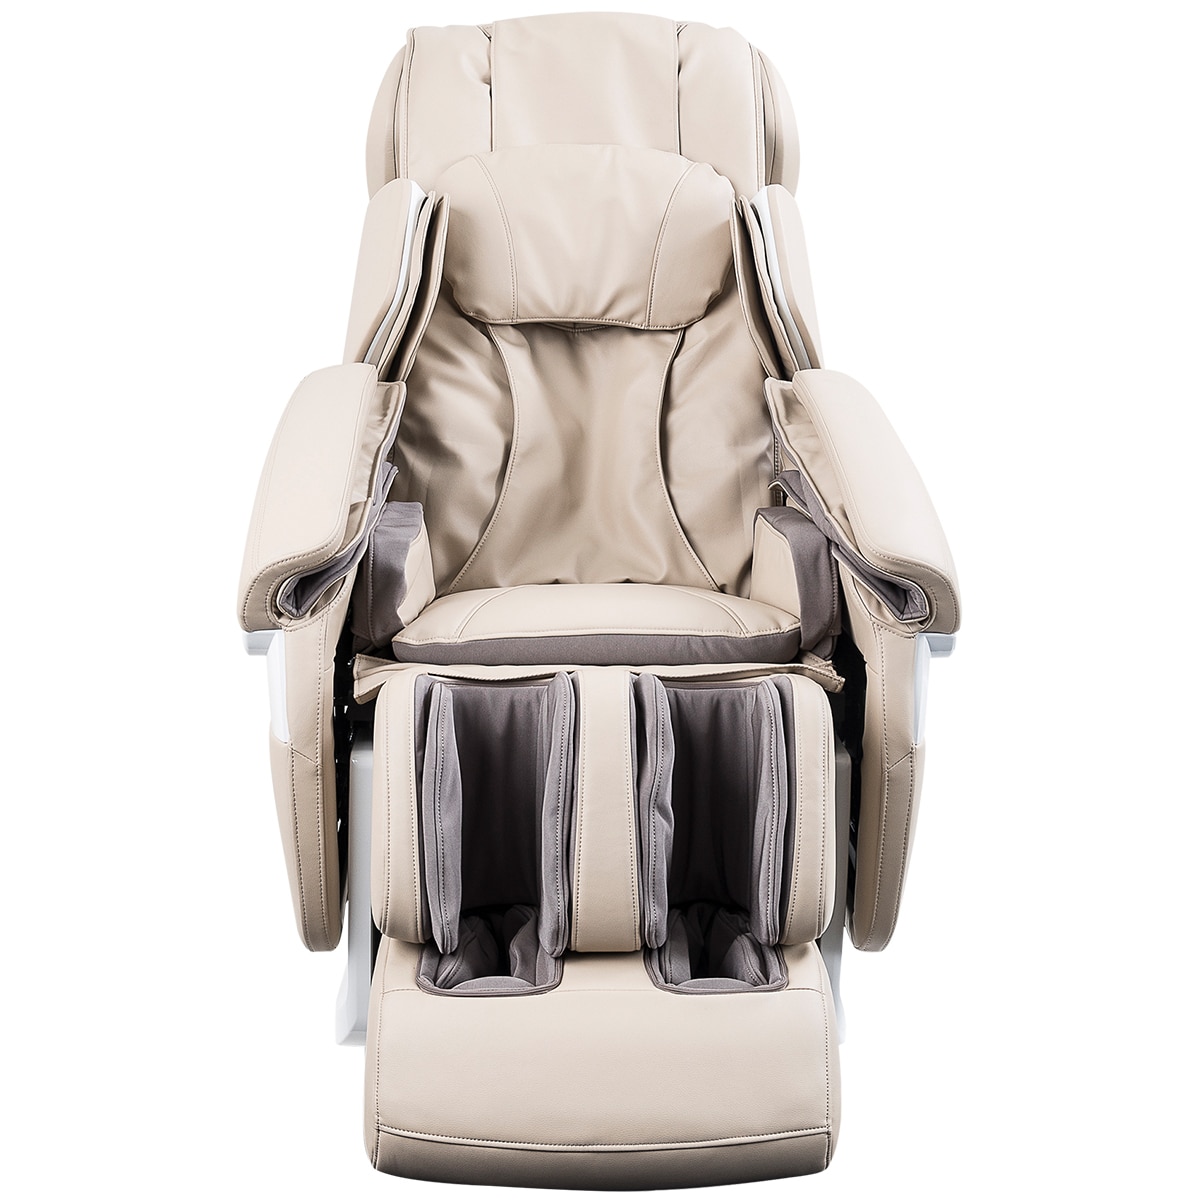 Masseuse Massage Chairs Platinum Health Massage Chair - Beige